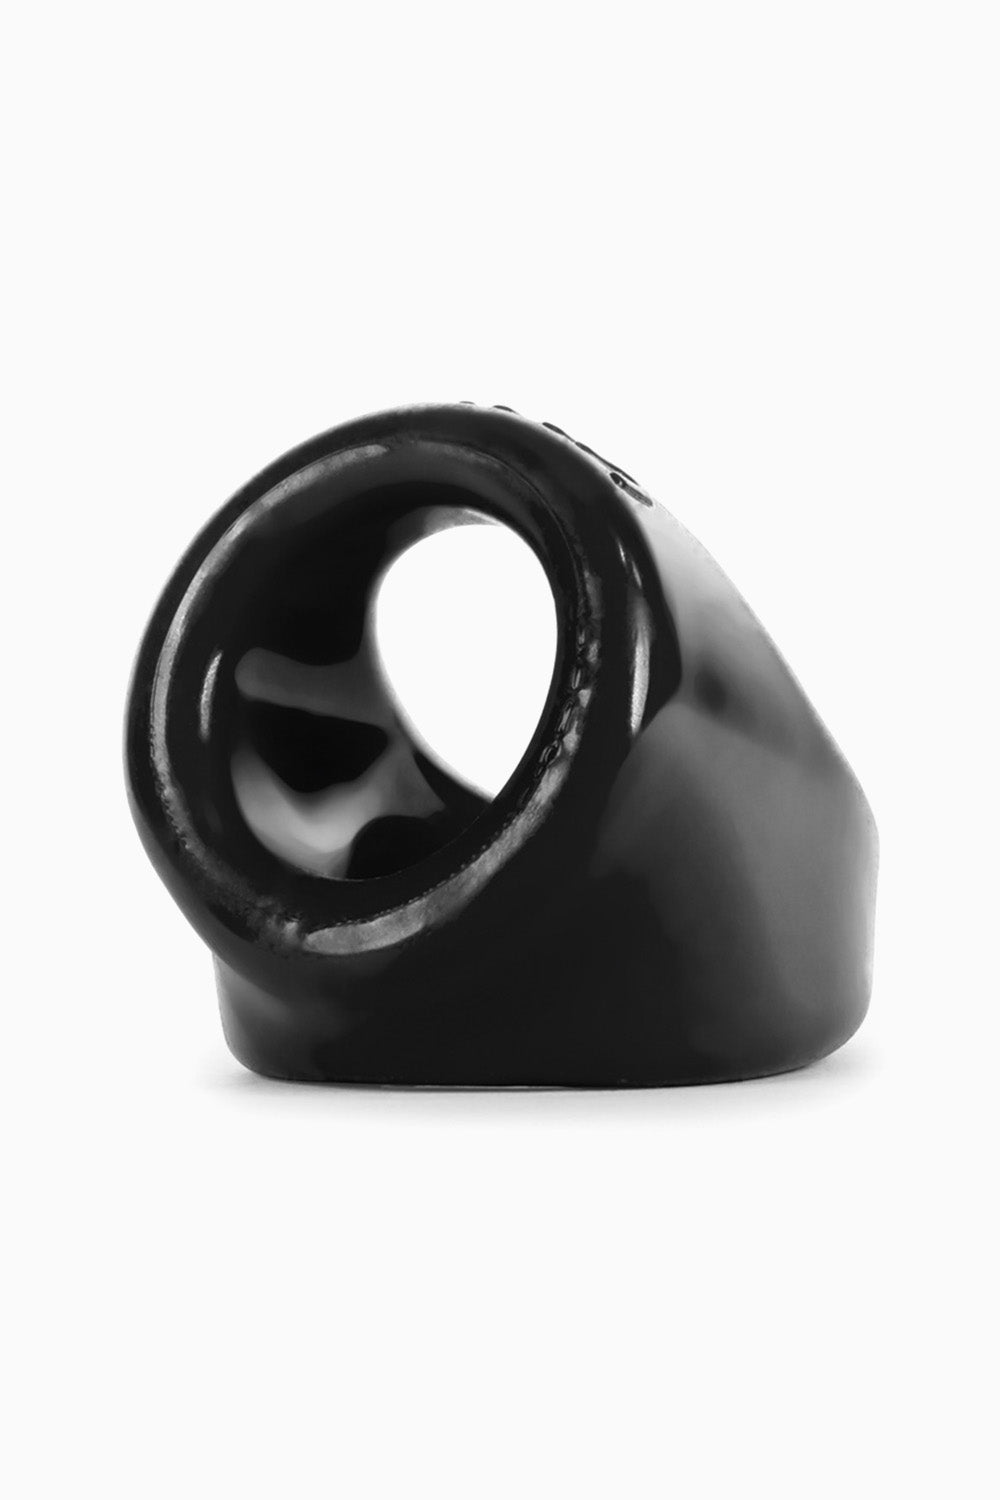 Oxballs Unit-X Cock Ring & Ball Sling Black